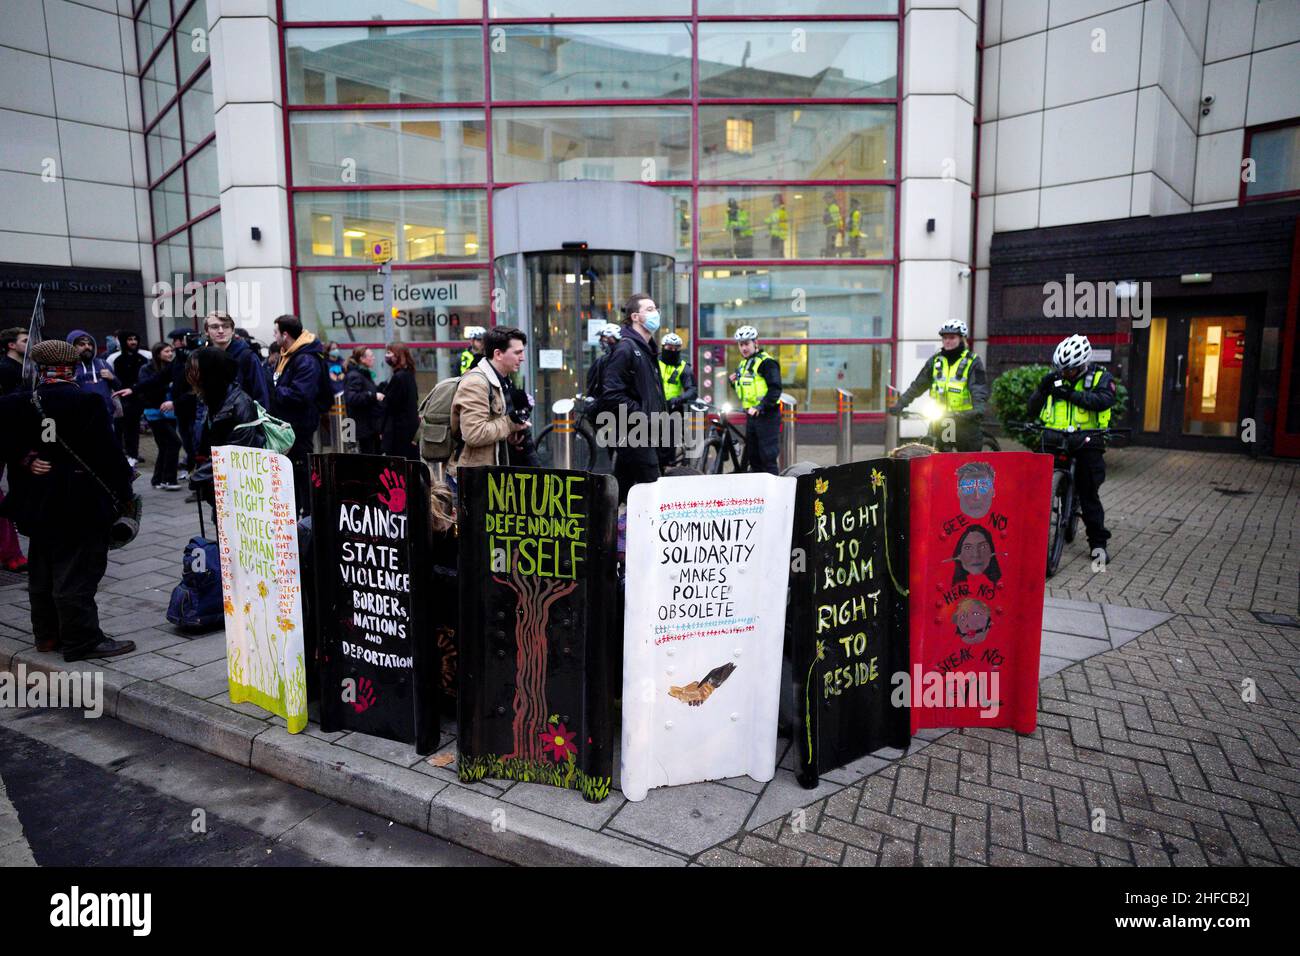 Los manifestantes se reúnen en las afueras de la comisaría de policía de Bridgewell en Bristol, durante una protesta contra el proyecto de ley de policía, delito, sentencia y tribunales. Fecha de la foto: Sábado 15 de enero de 2022. Foto de stock